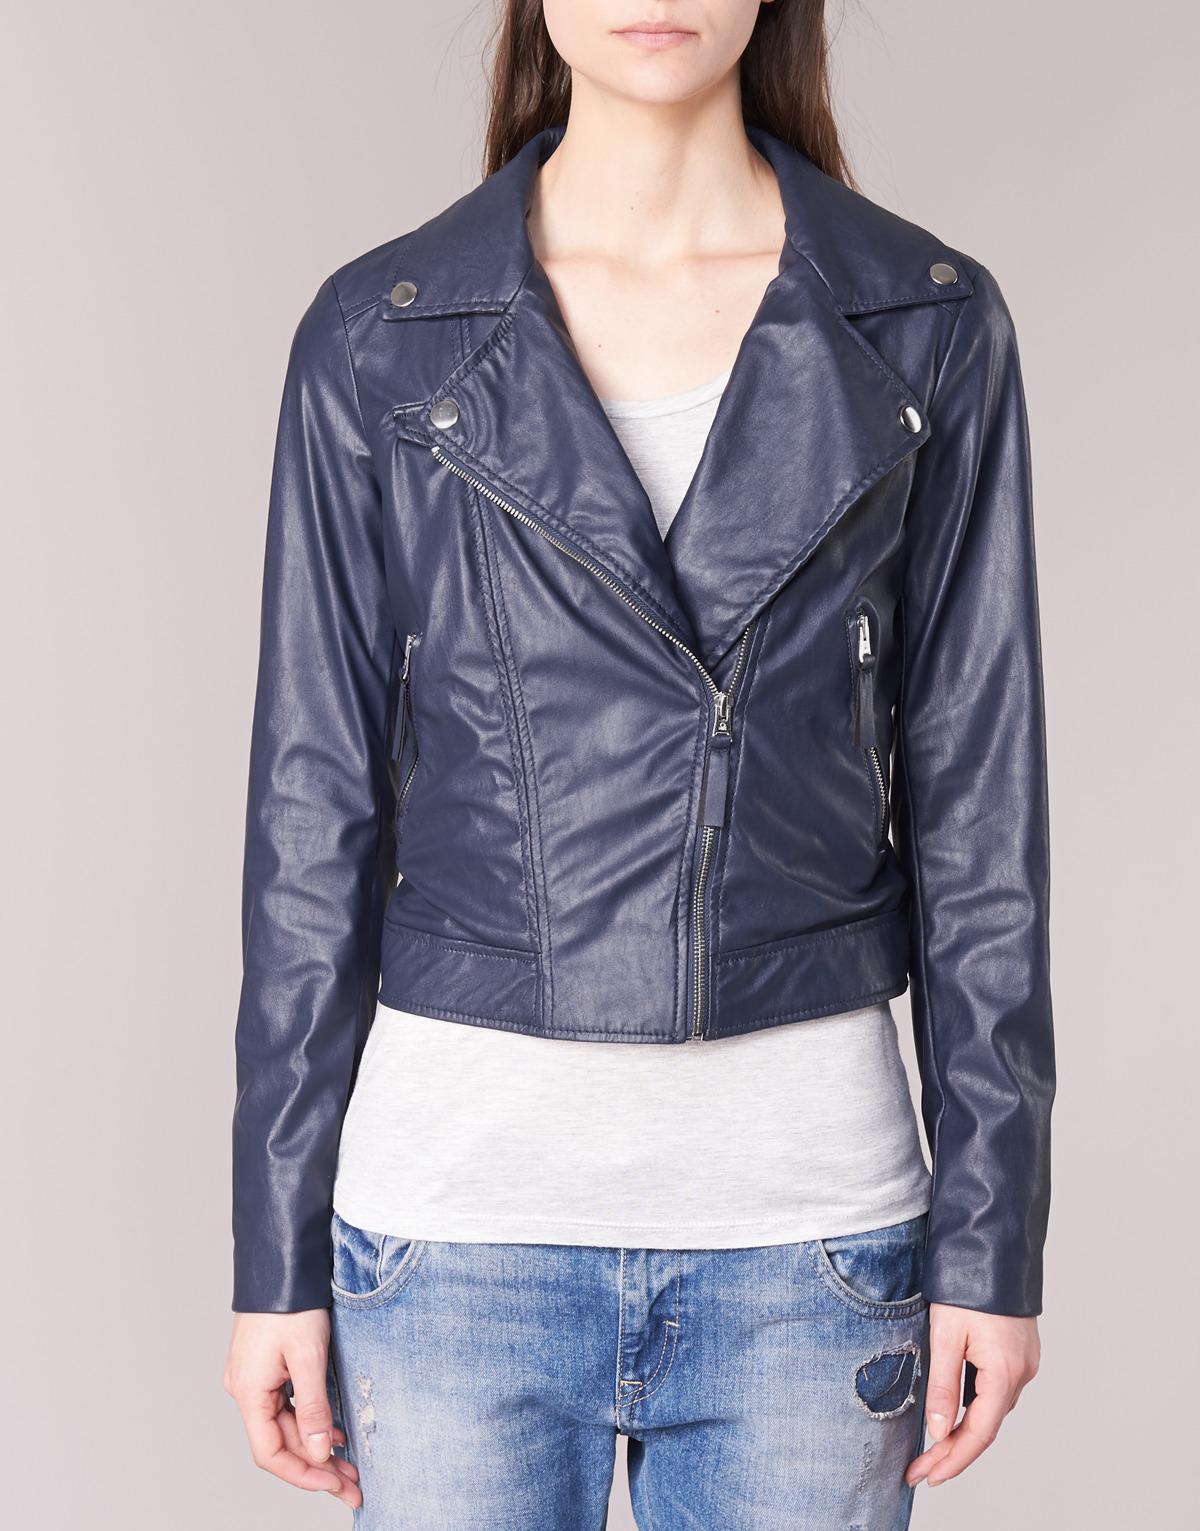 Benetton Ferdoni Women's Leather Jacket In Blue - Lyst